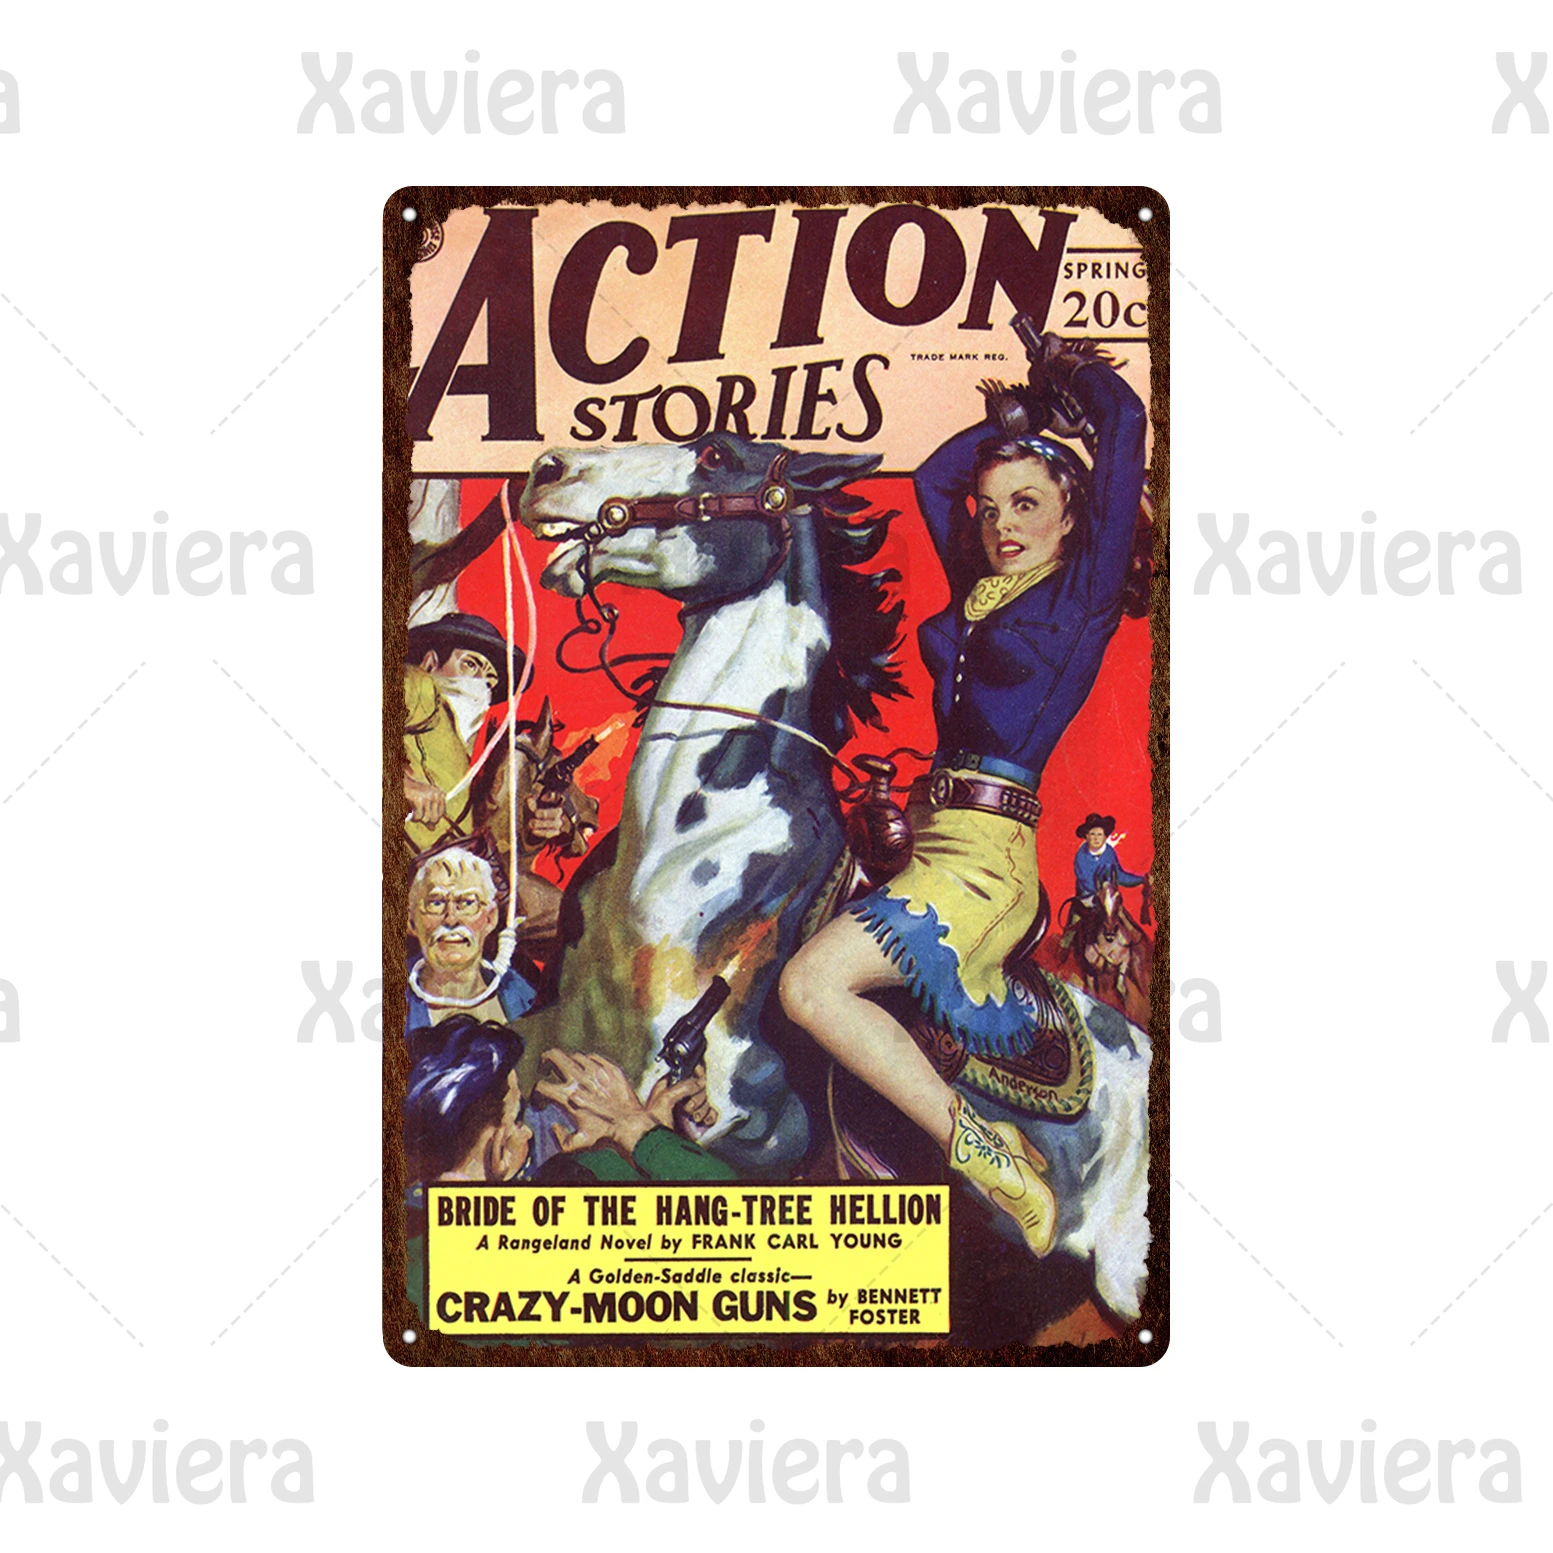 KEAPSIGN Targa in metallo retrò classico con scritta El Arte Pedro Astort in stile vintage spagnolo pubblicitario cartello vintage classico poster decorazione da parete 20 x 30 cm 